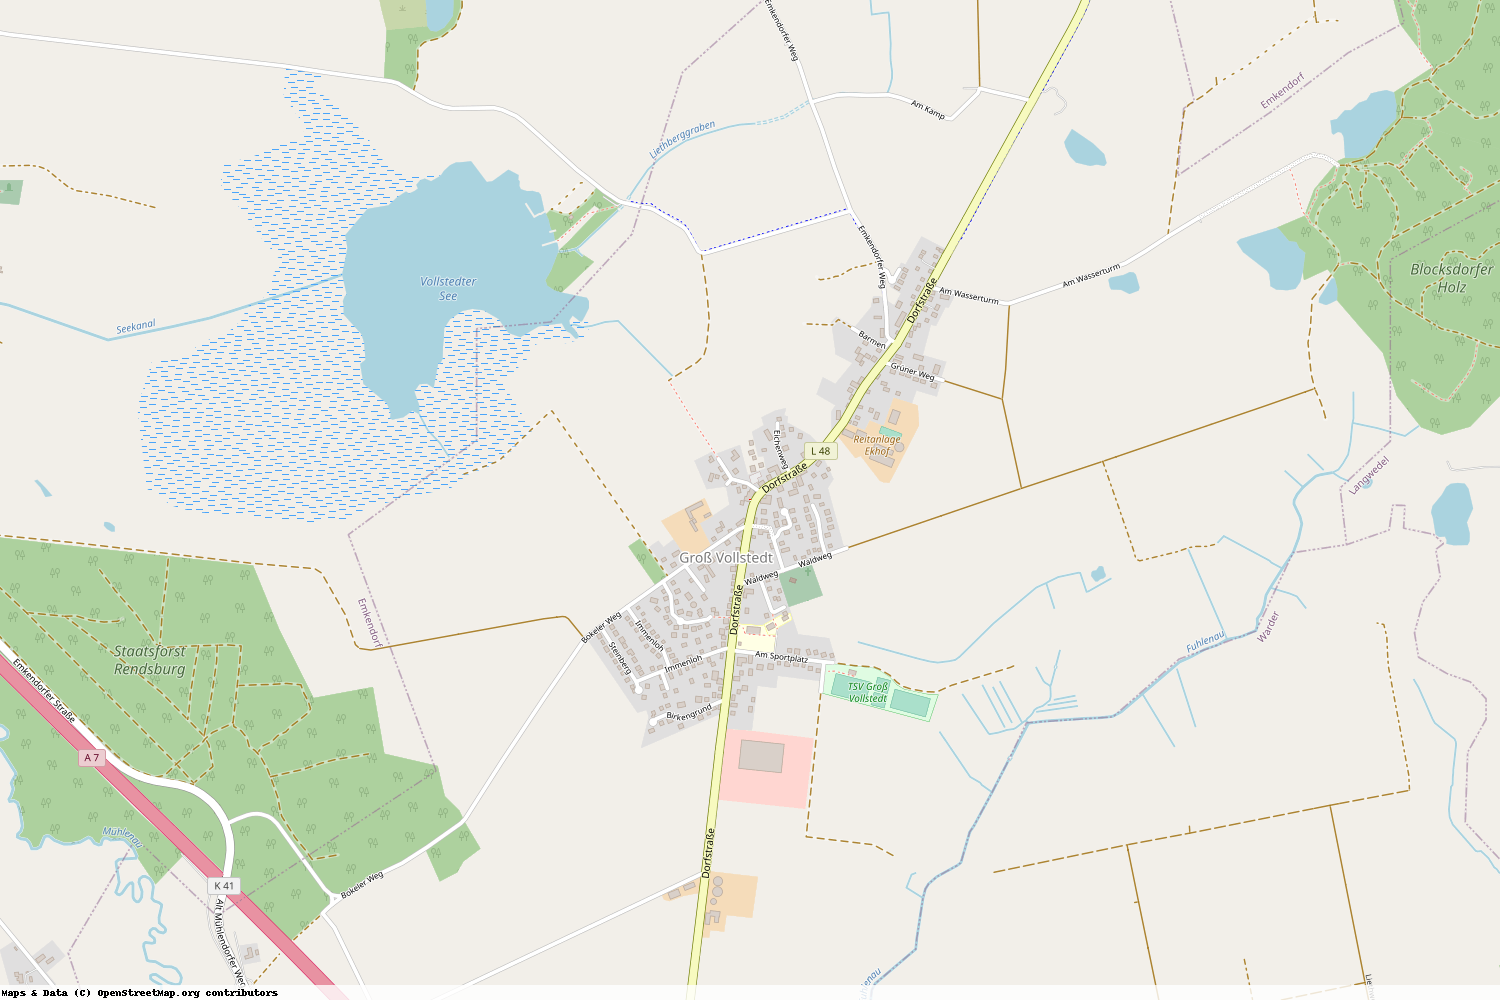 Ist gerade Stromausfall in Schleswig-Holstein - Rendsburg-Eckernförde - Groß Vollstedt?